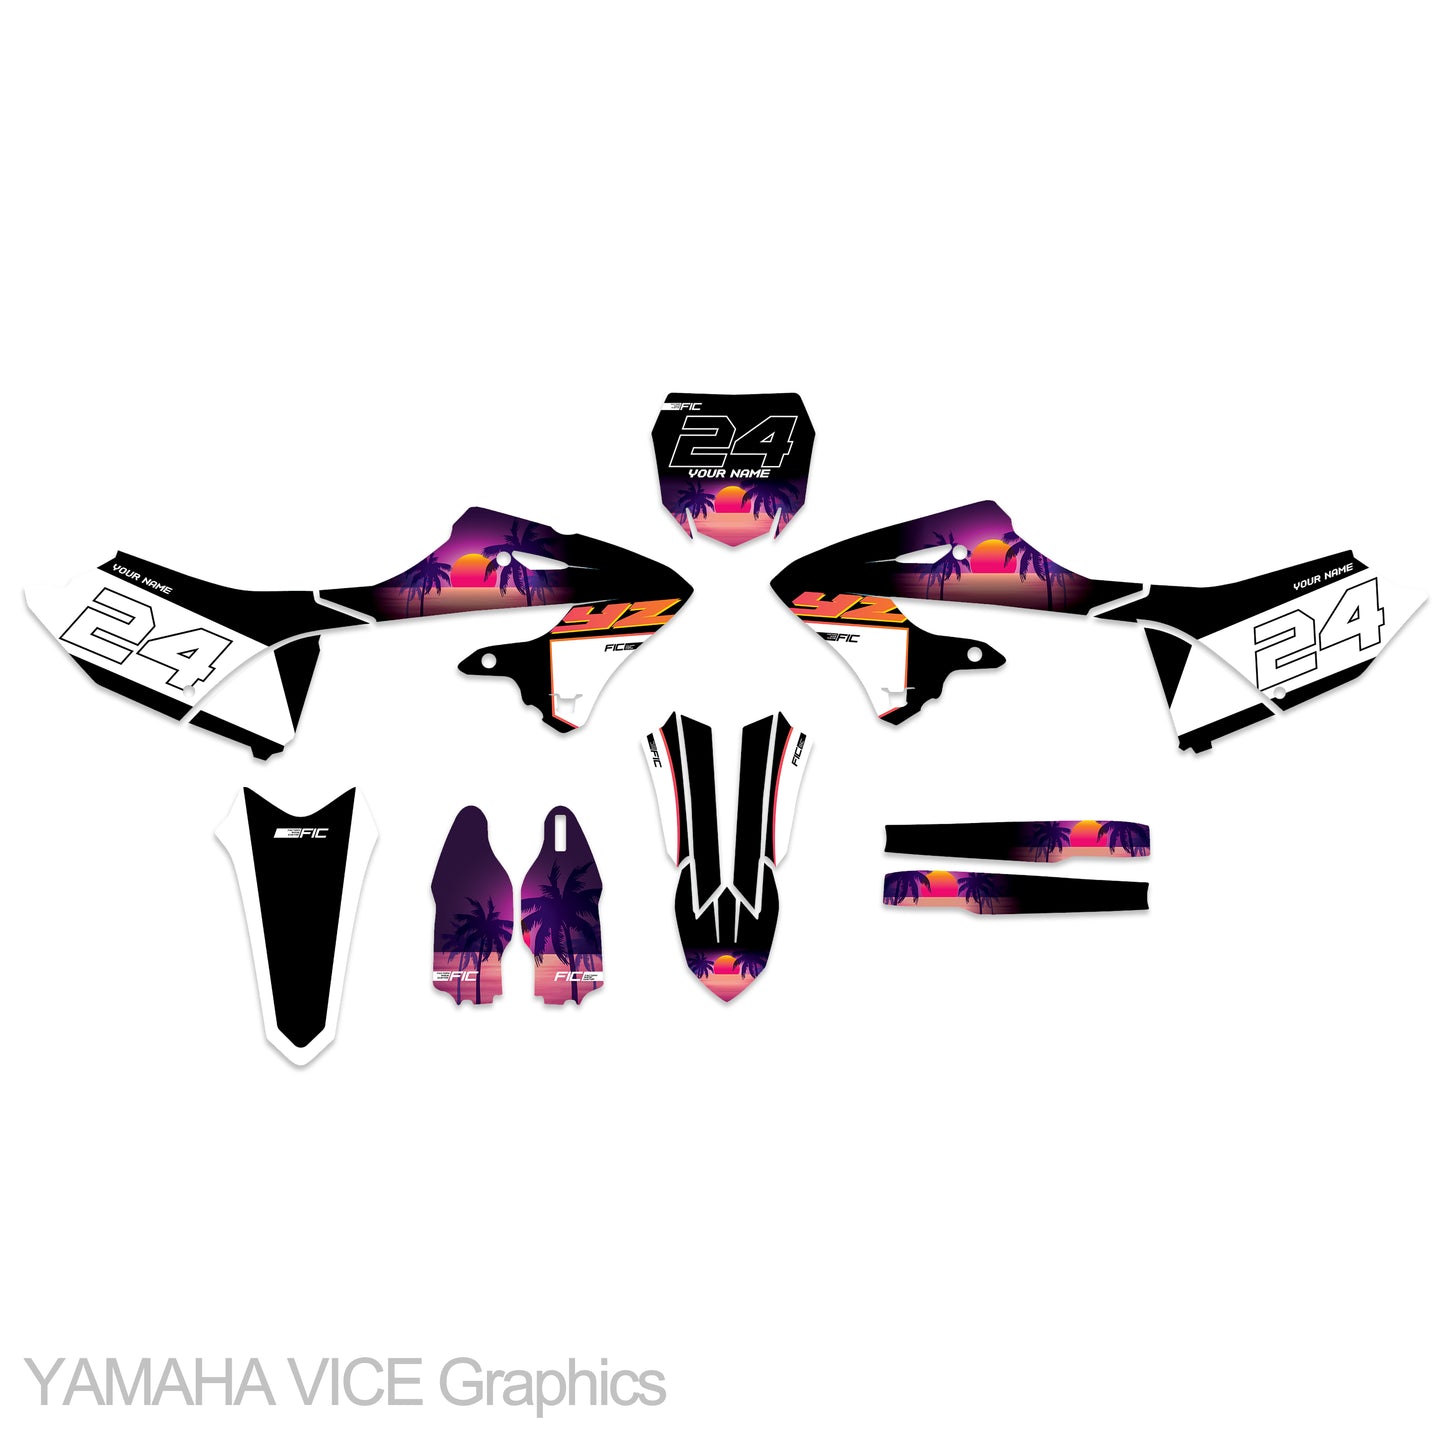 YAMAHA WR 450F 2007 - 2011 VICE Graphics kit